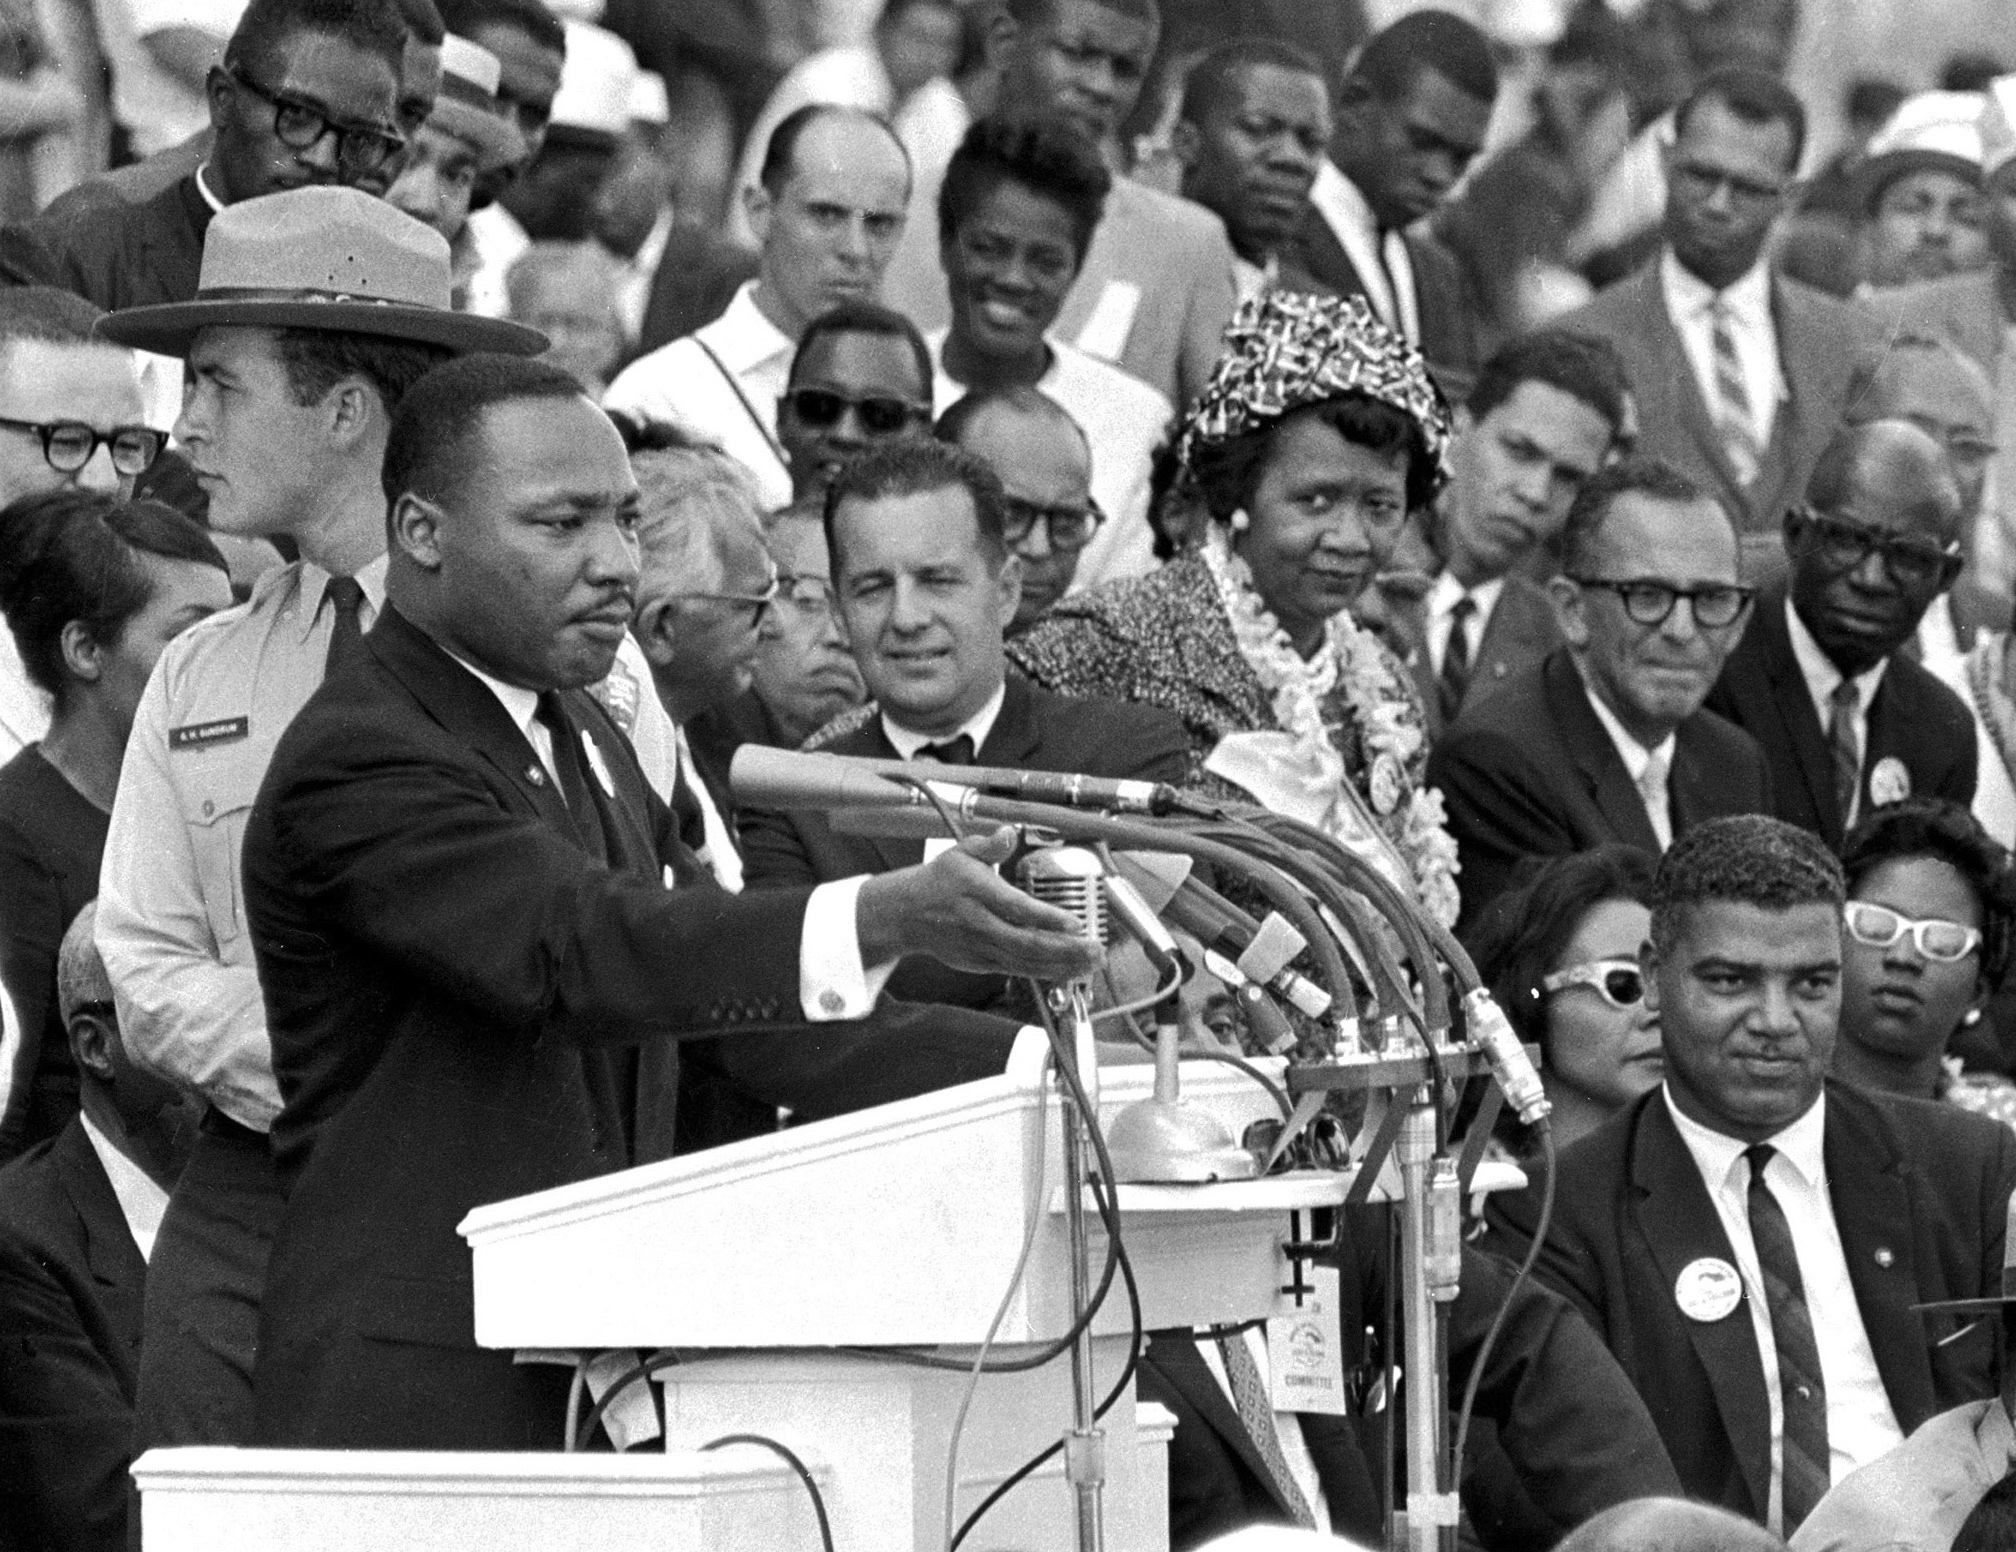  Le révérend Dr. Martin Luther King Jr., prononce son discours "J